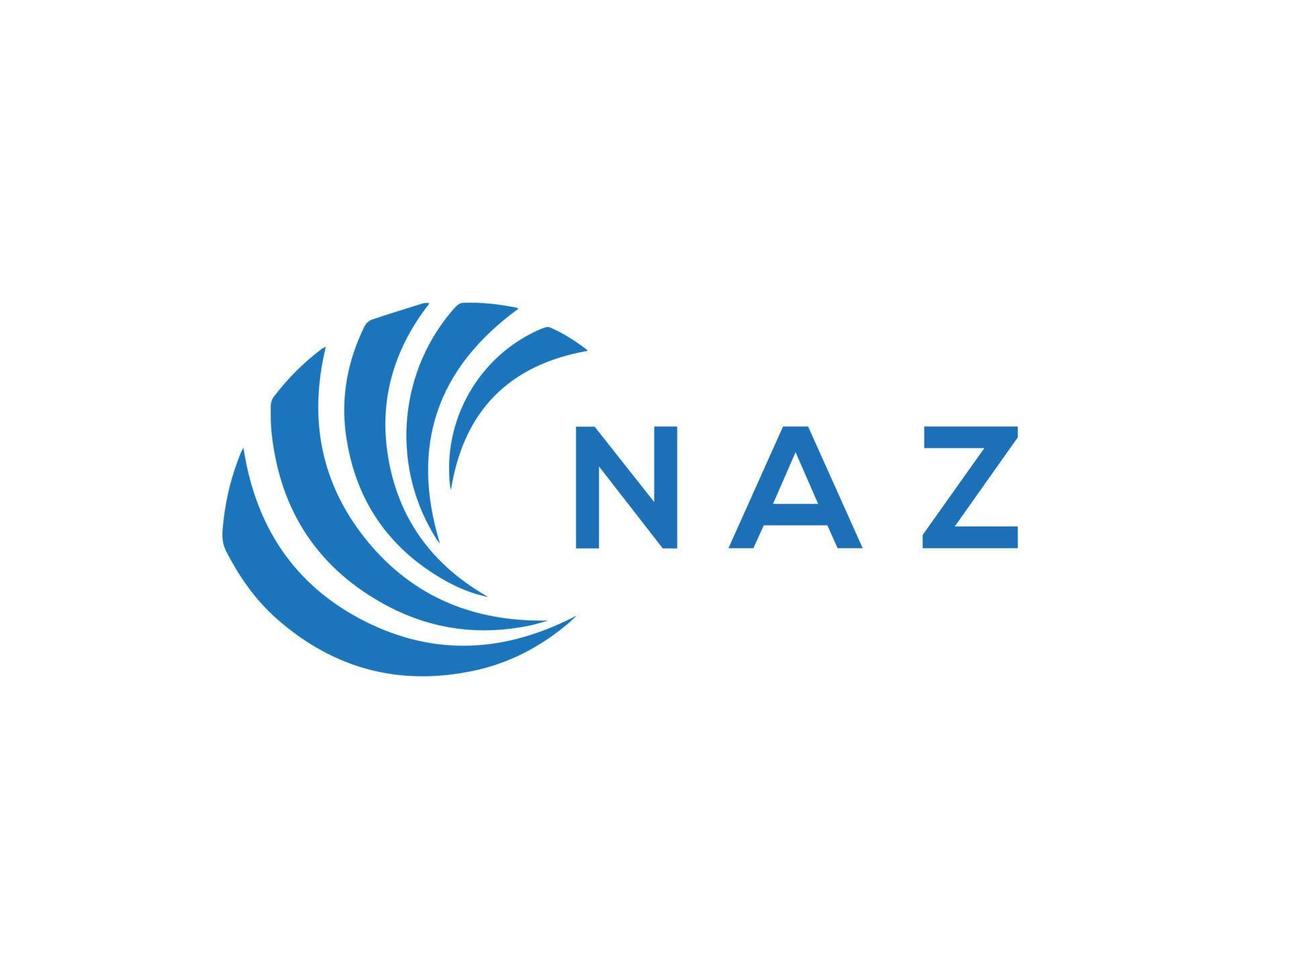 NAZ letter logo design on white background. NAZ creative circle letter logo concept. NAZ letter design. vector